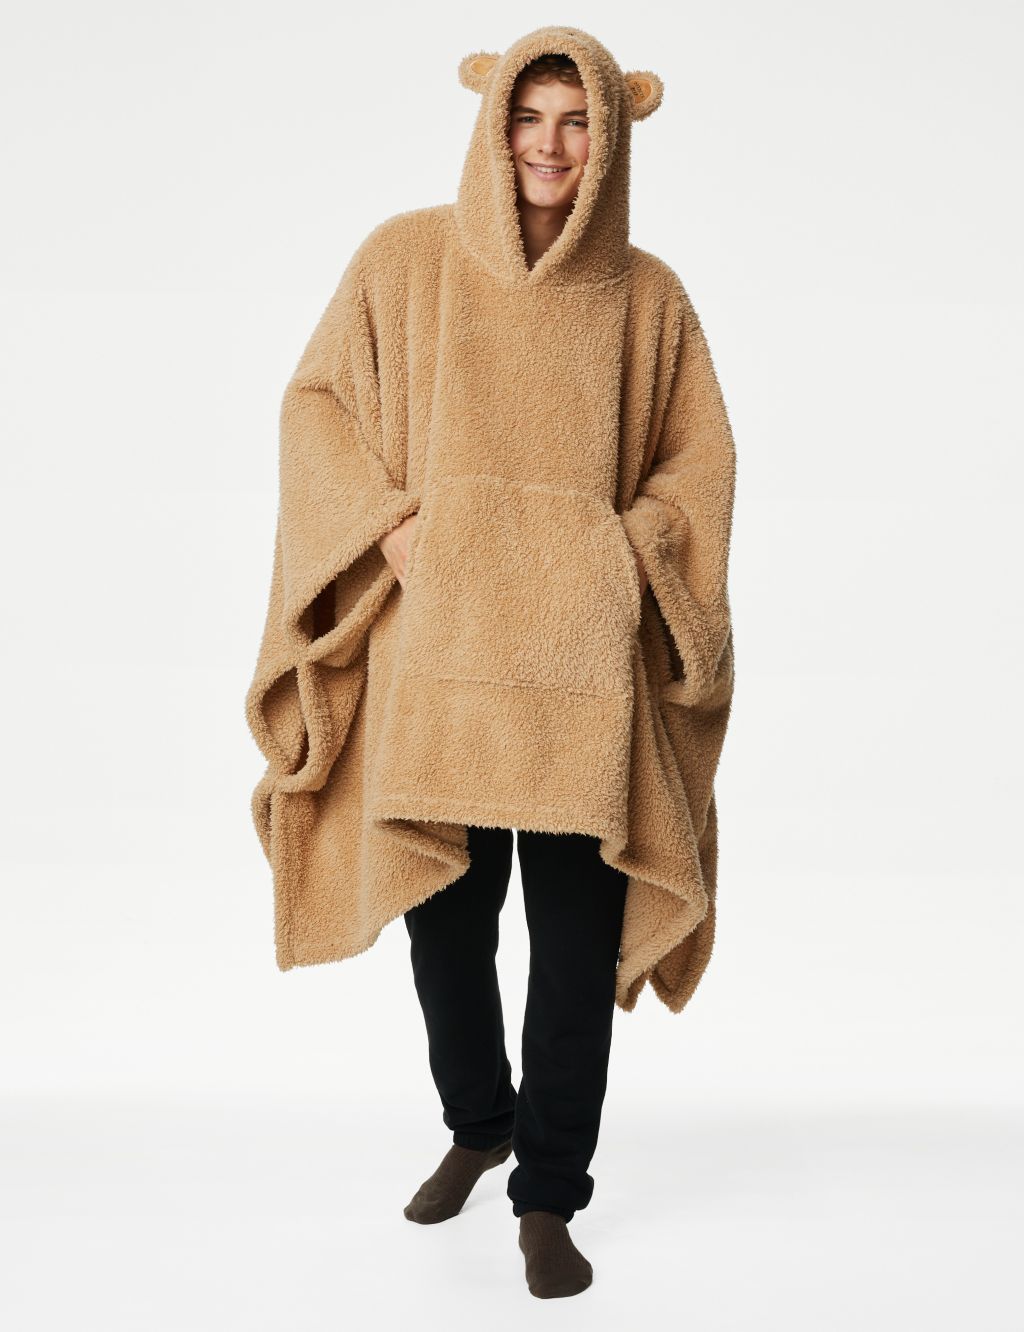 Spencer Bear™ Hooded Blanket image 2